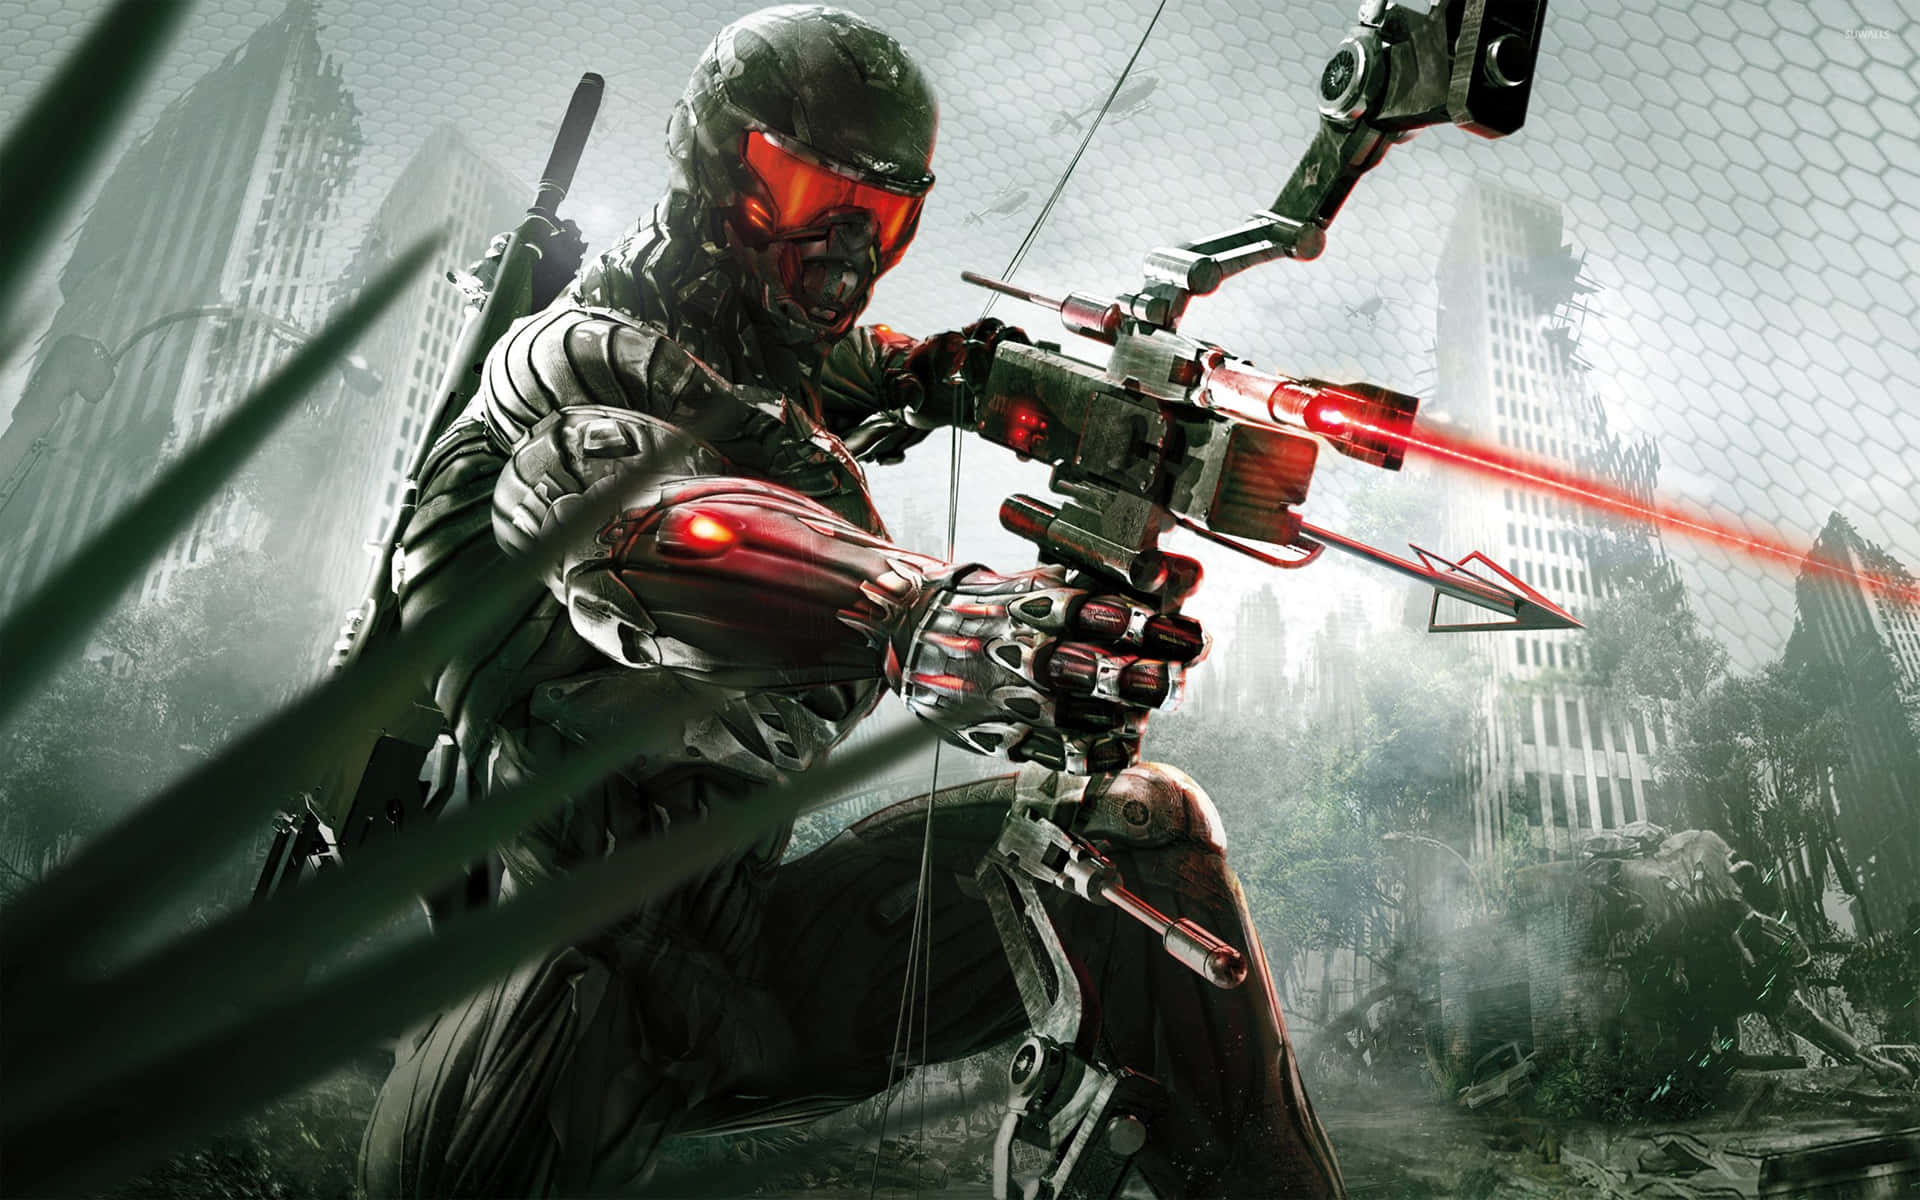 "Fight through epic sci-fi battles in Crysis 4K!" Wallpaper